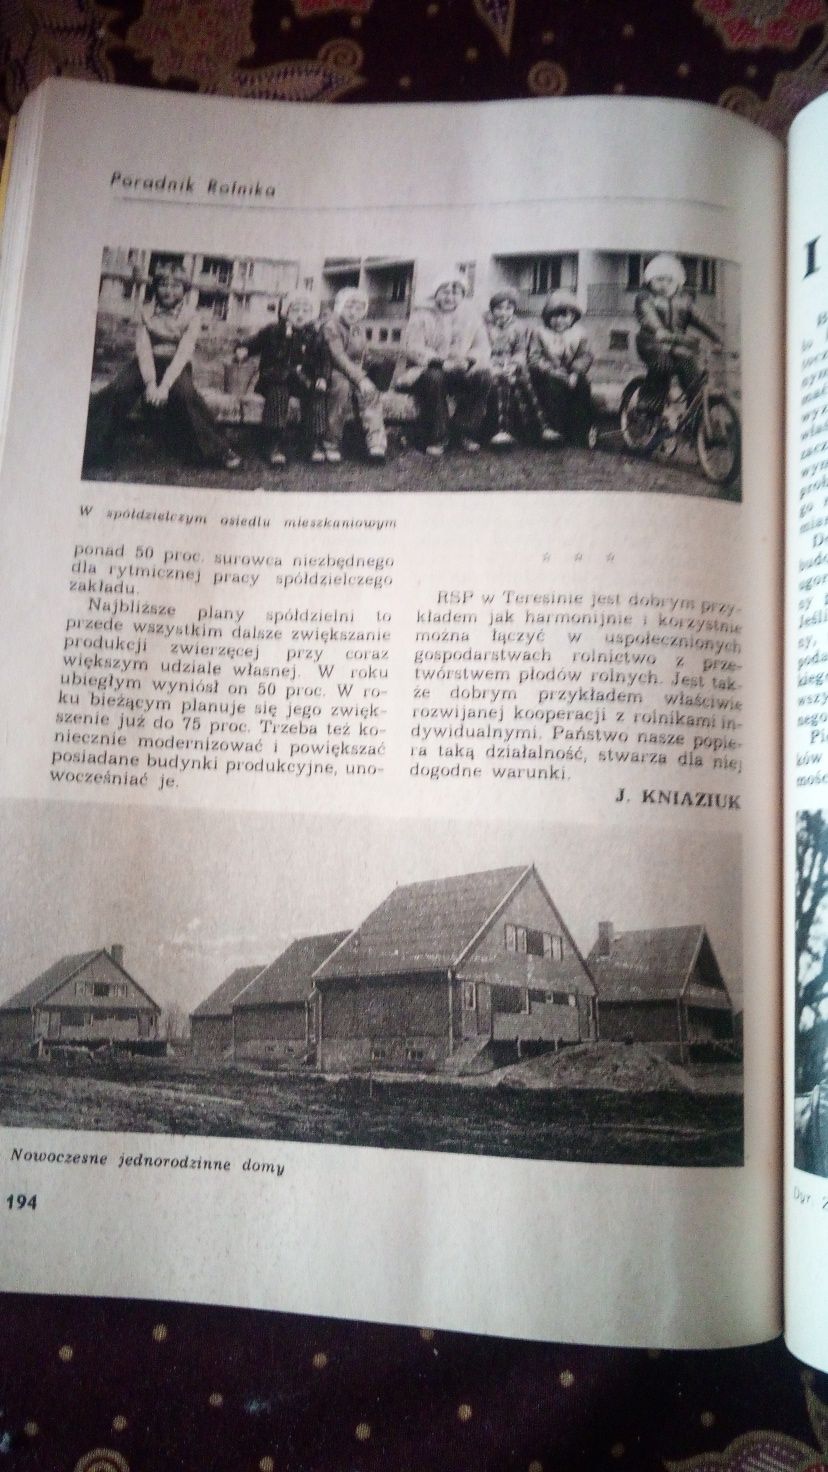 55. Stary kalendarz ,, Poradnik rolnika" z 1980